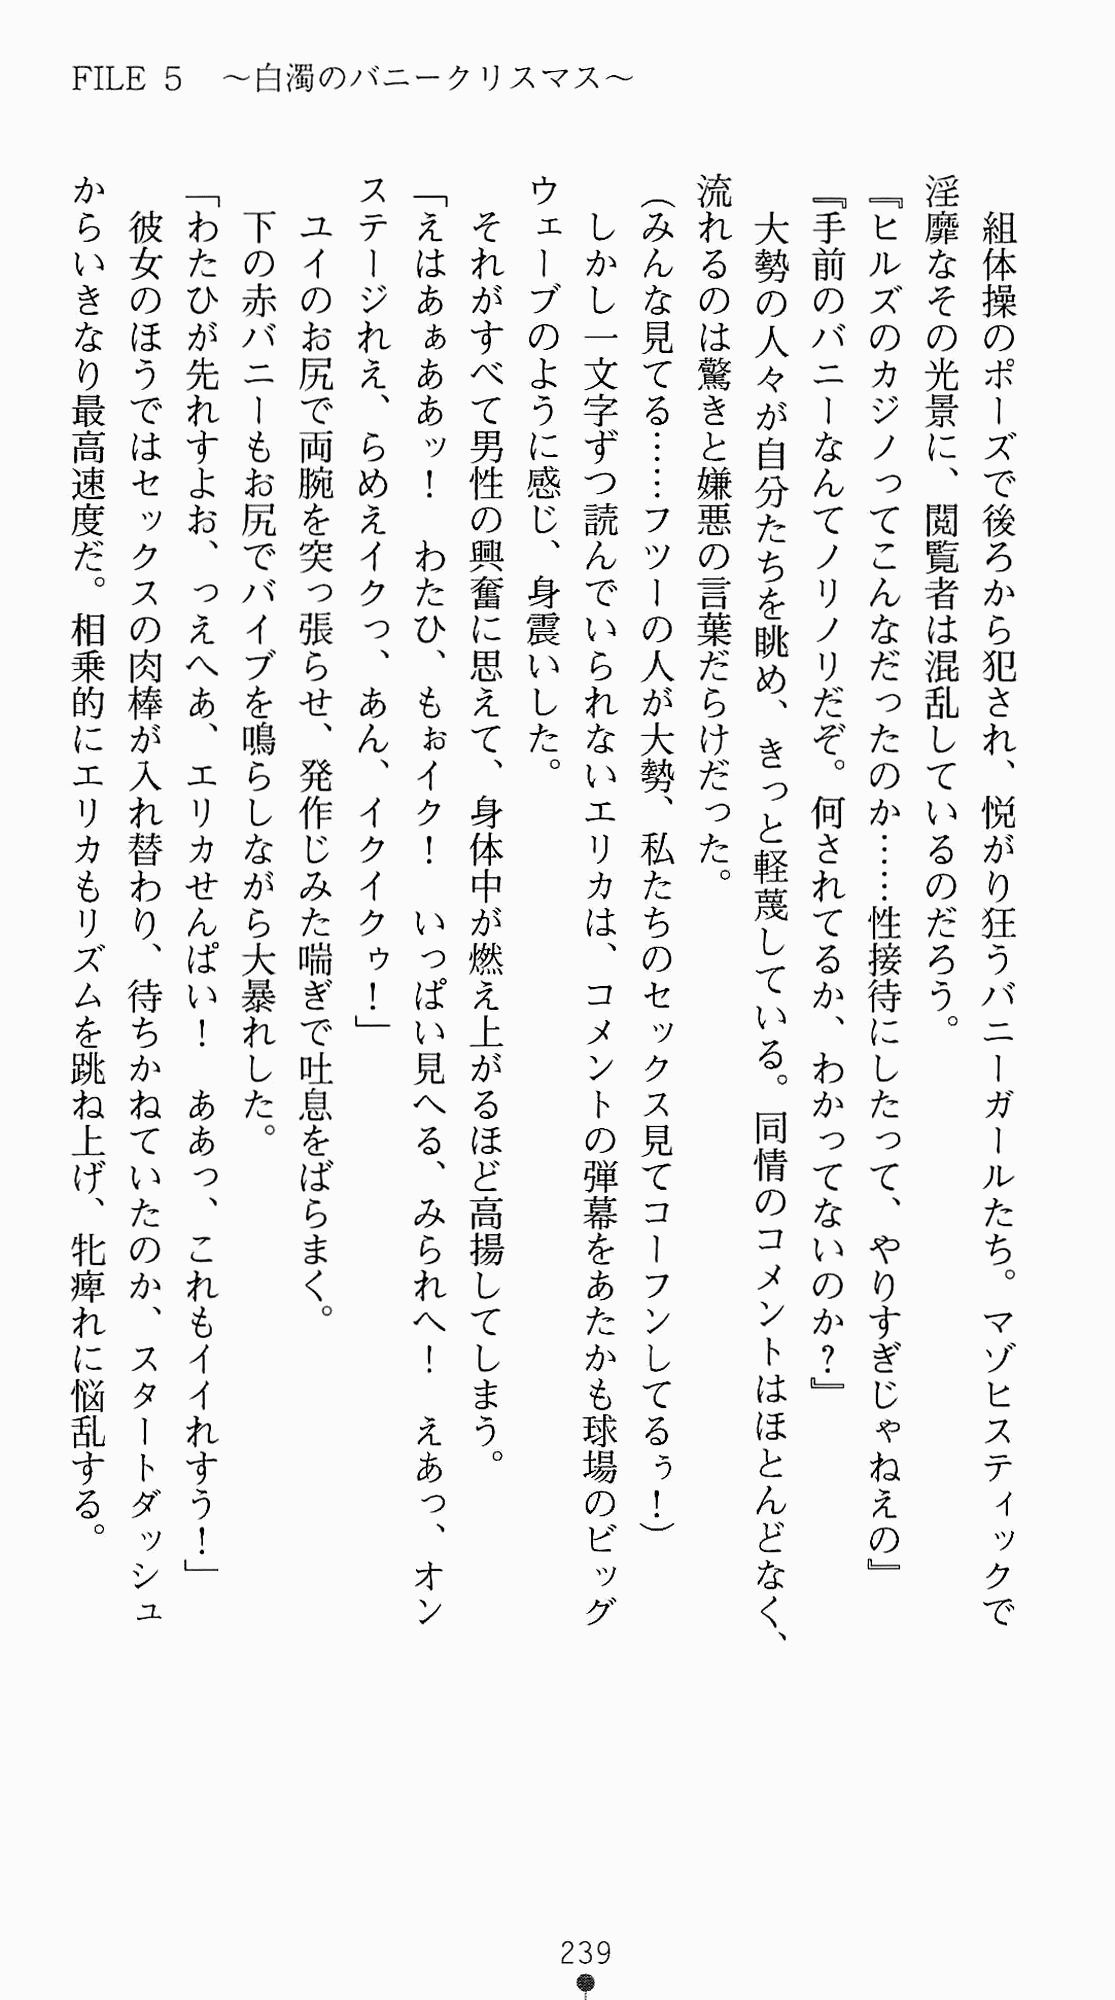 [Kagura Youko, Takahama Tarou] Shiritsu Tantei Takasuga Erika no Jikenbo 2 - Chijouha AV Satsuei 24-ji 254